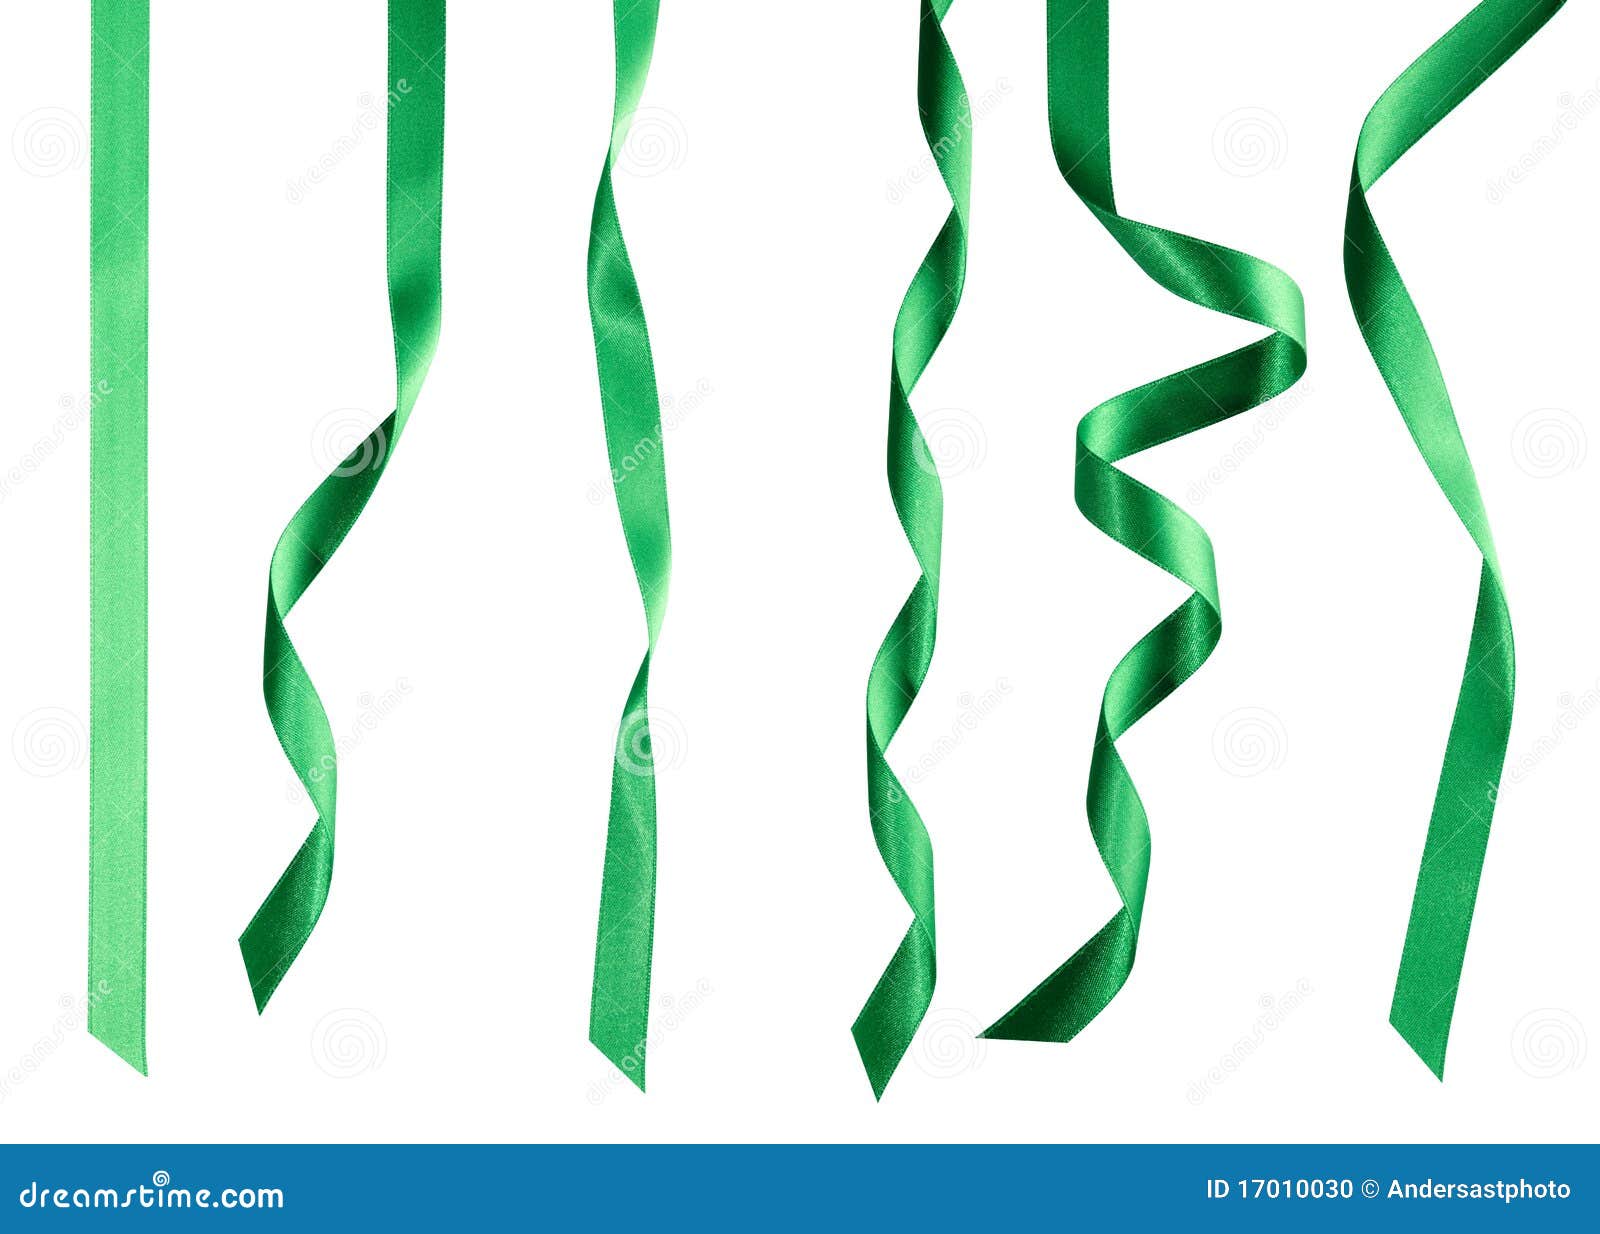 绿色的丝带设计素材可商用图片_线条形状_设计元素-图行天下素材网